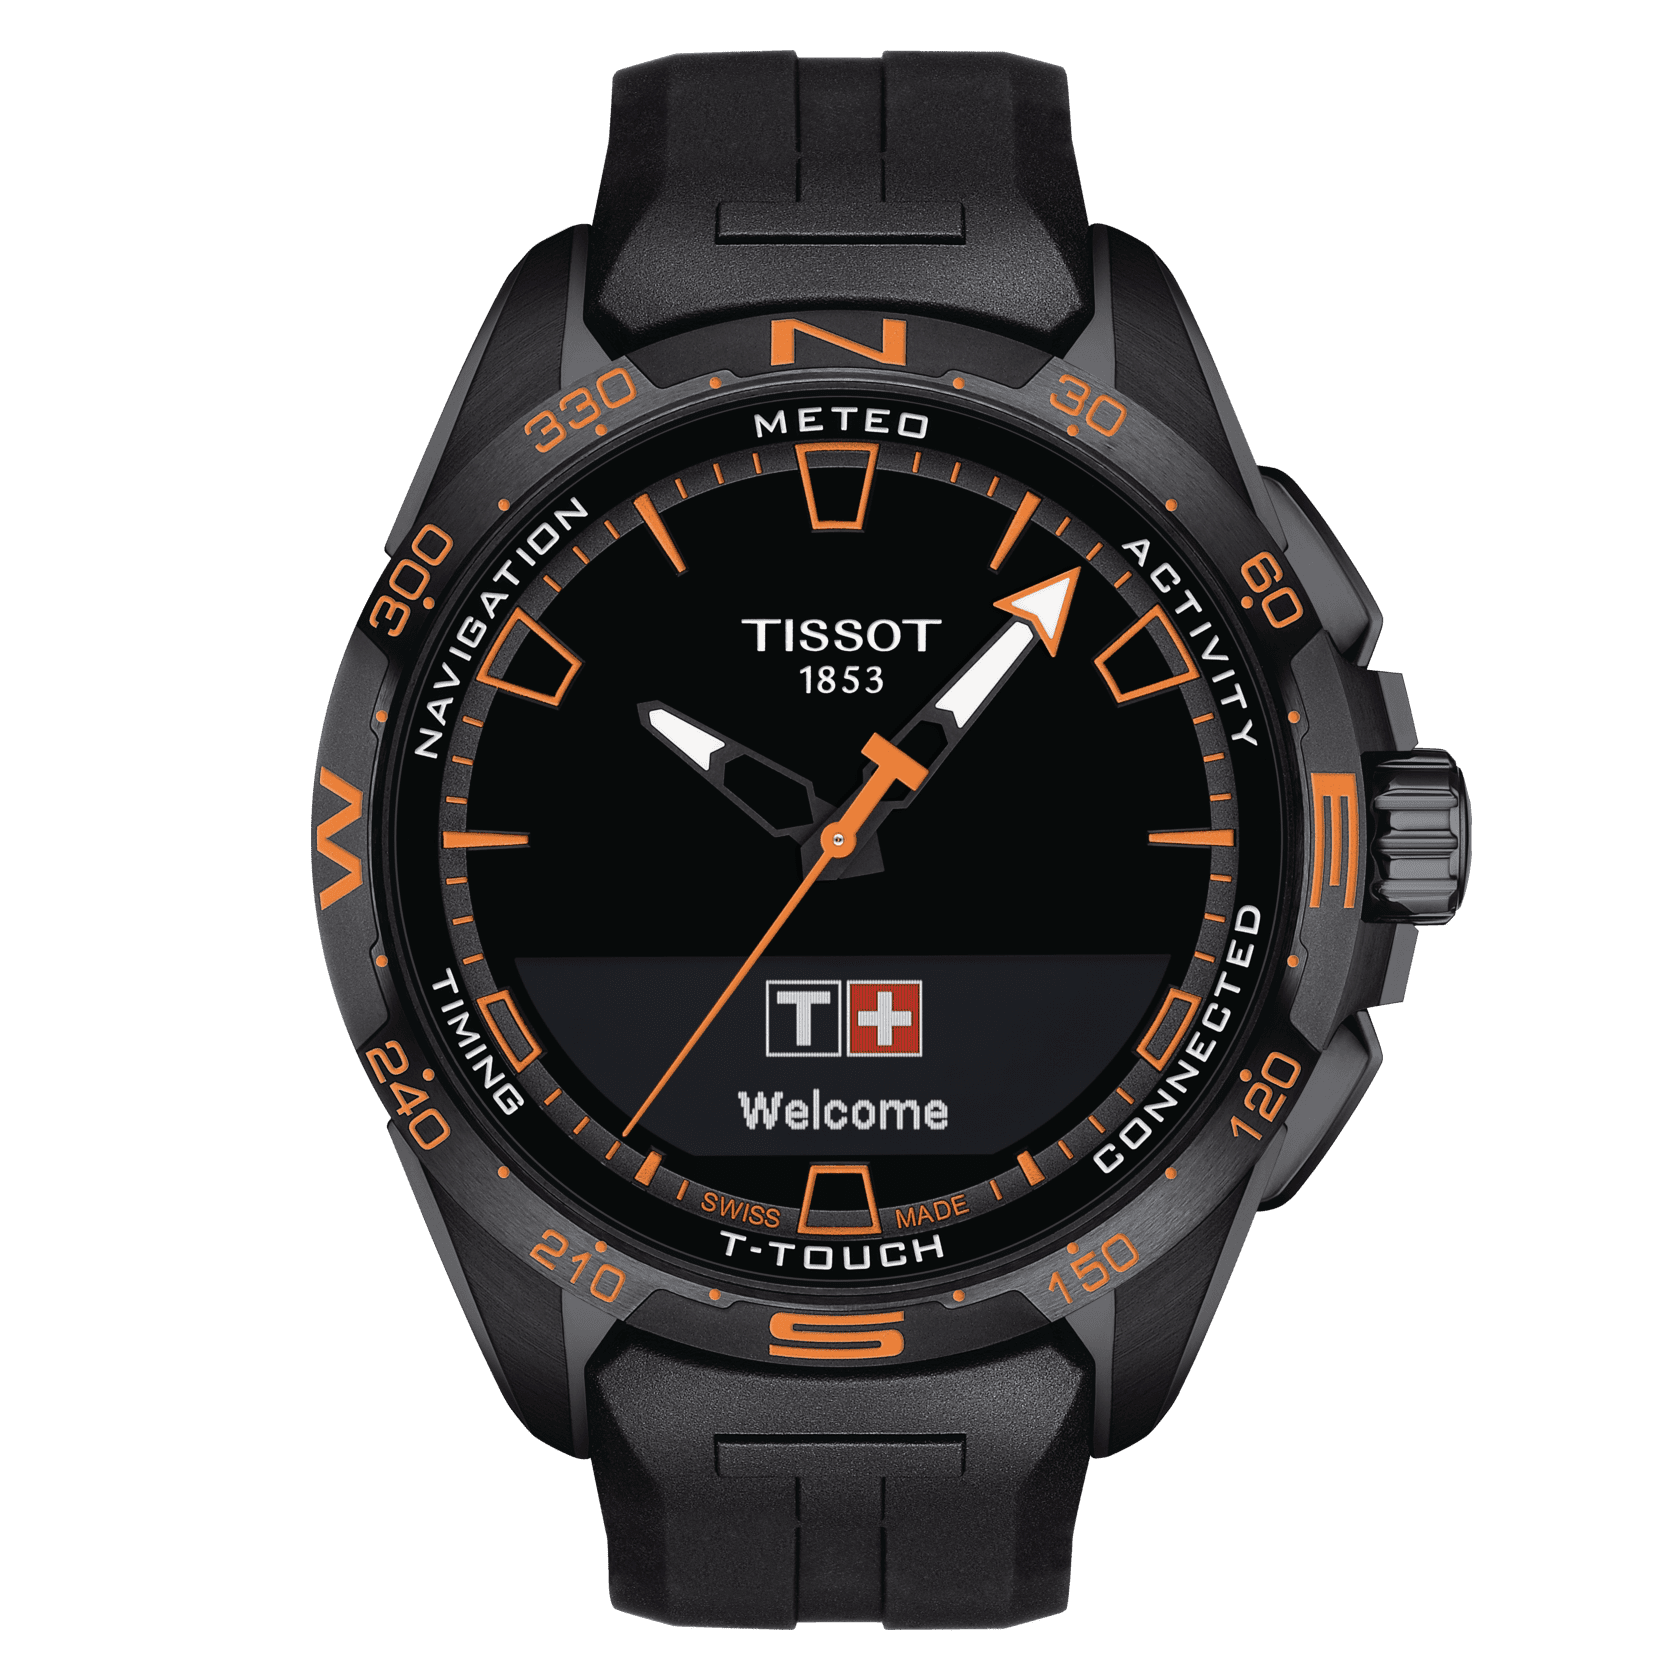 TISSOT T-タッチ コネクト ソーラー | モデル T1214204705104 | Tissot 